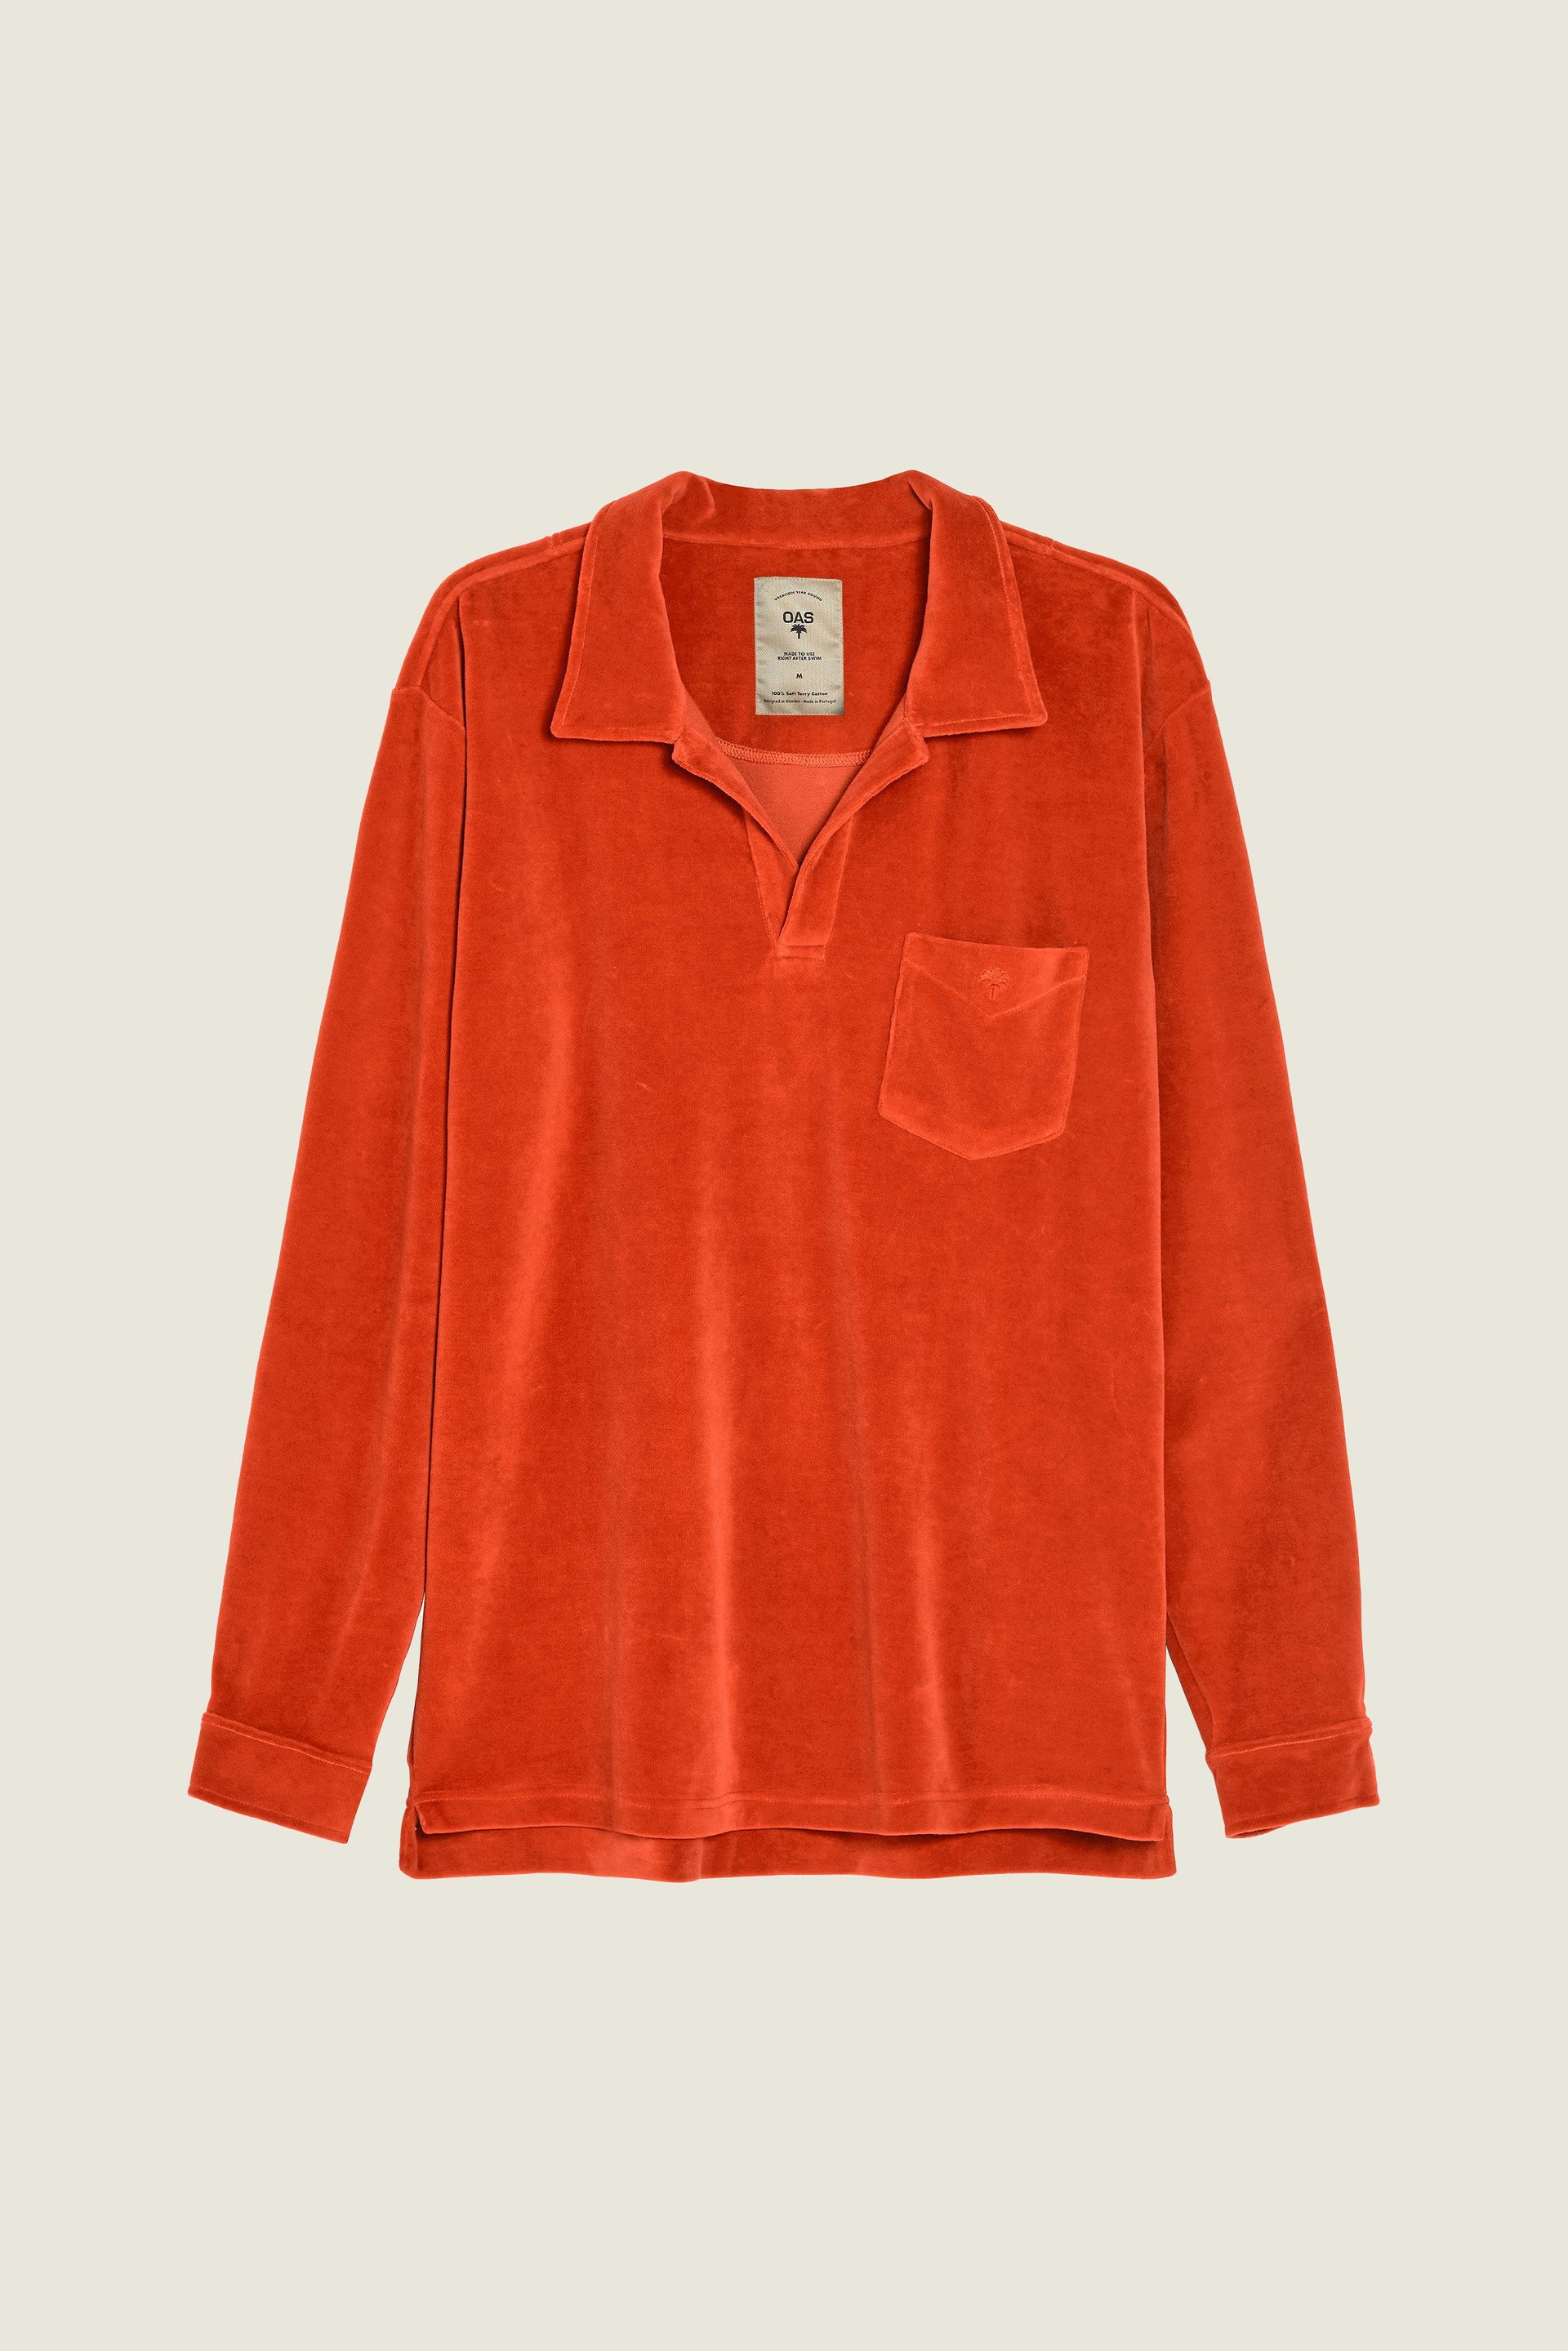 Velour | Long OAS Burnt Orange Sleeve